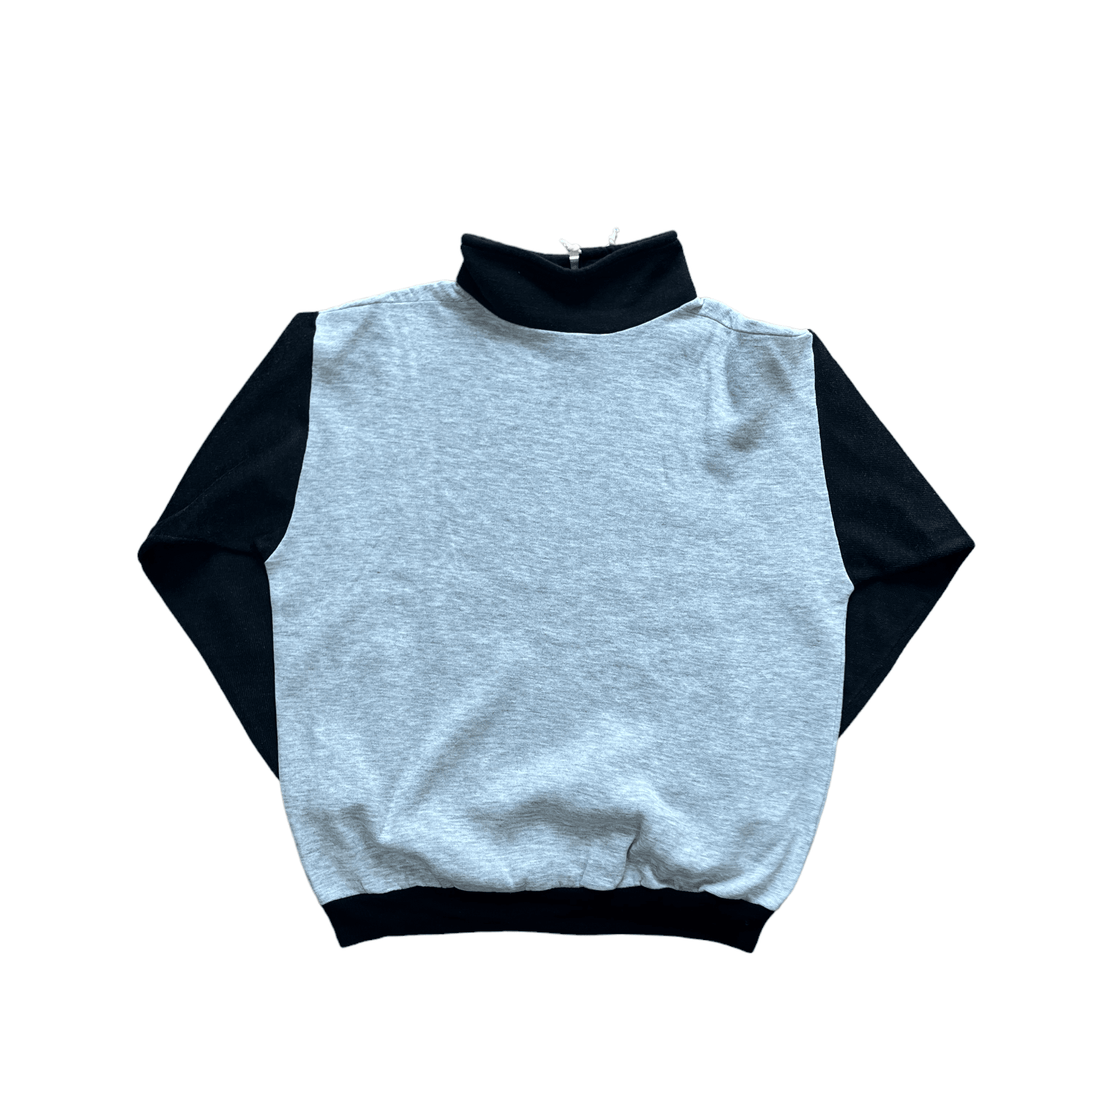 Vintage 90s Grey + Black Juventus Sweatshirt - Large - The Streetwear Studio